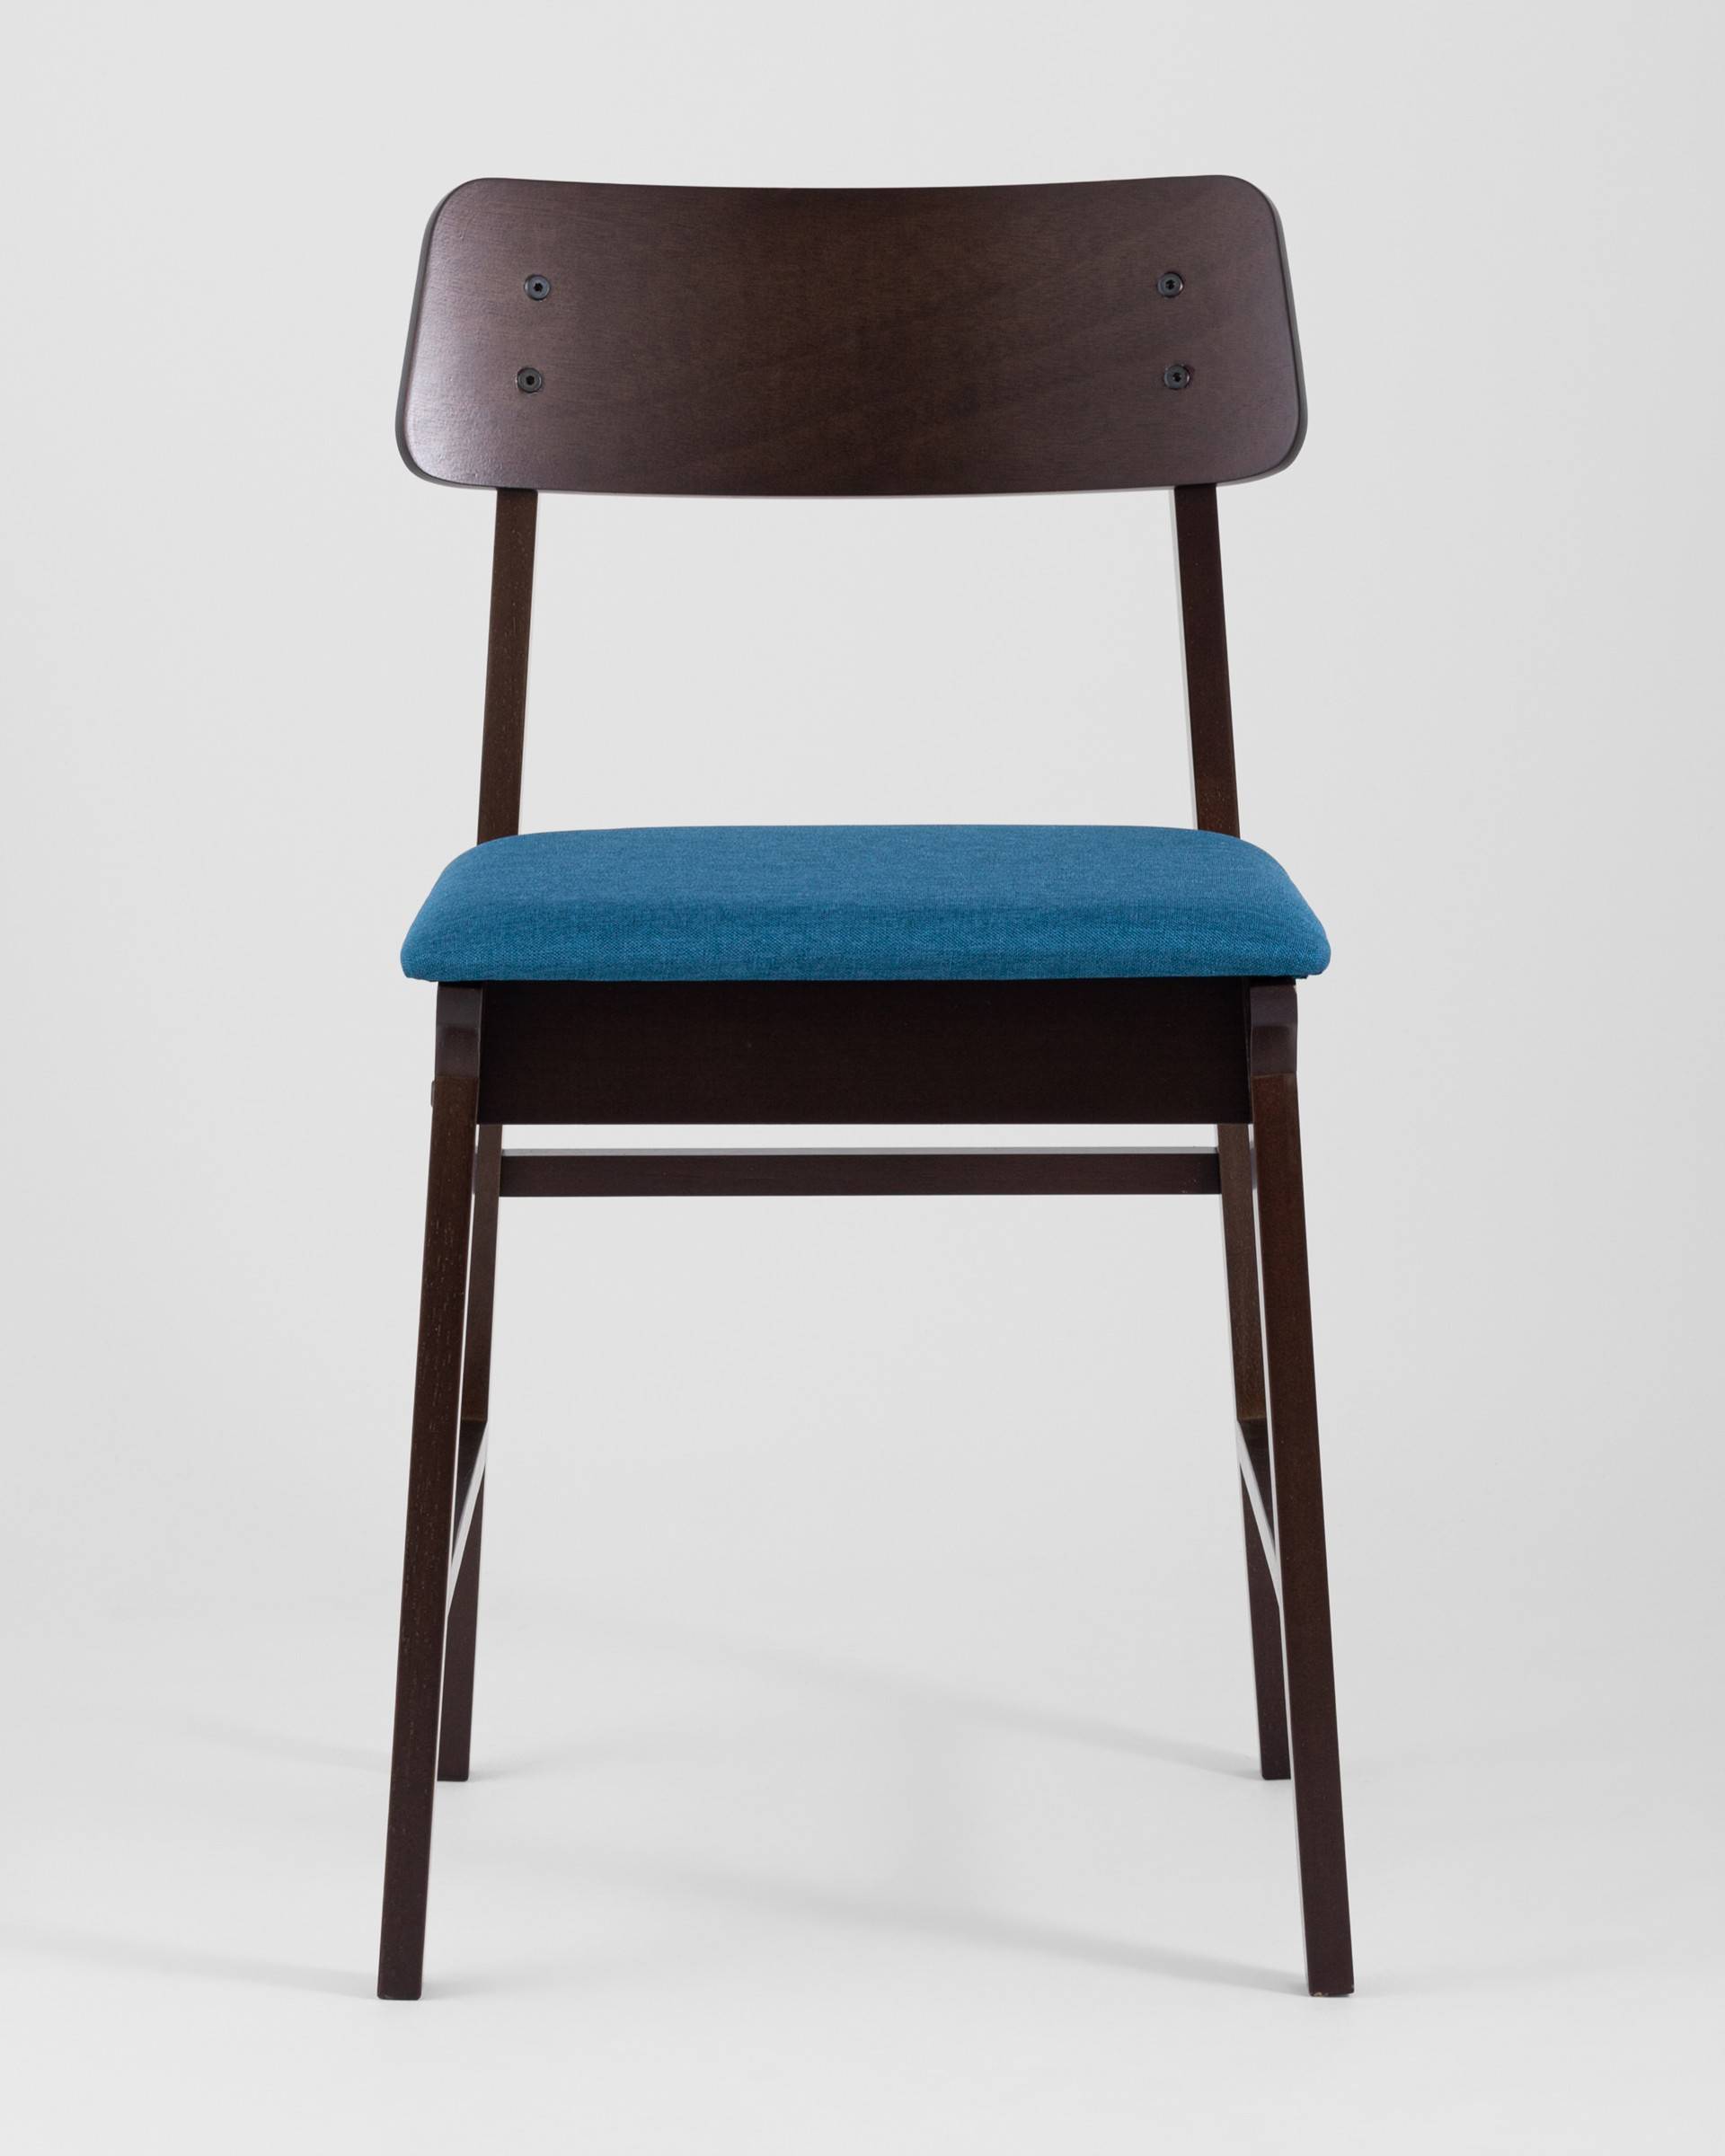 Стул кресло 59х59х110 см синий с подстаканником 120 кг green day